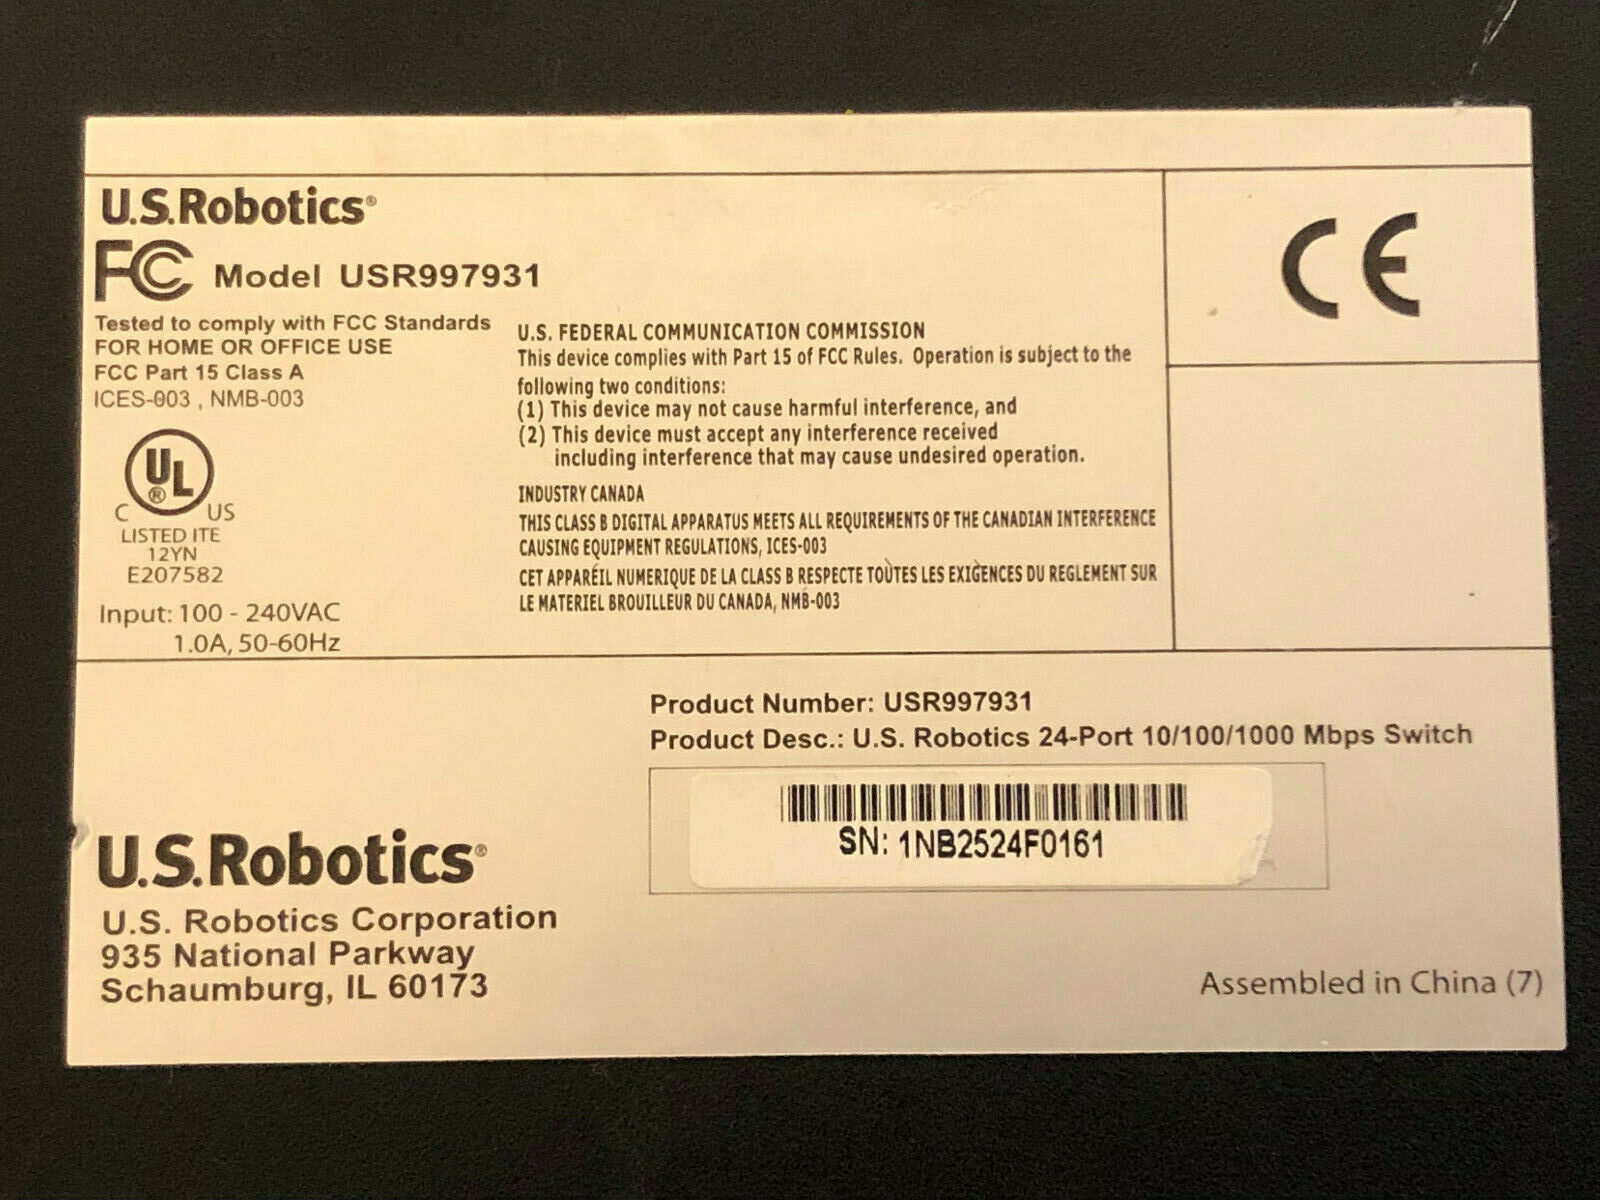 U.S. Robotics 24-Port Unmanaged Gigabit Ethernet Switch 10/100/1000 USR997931.